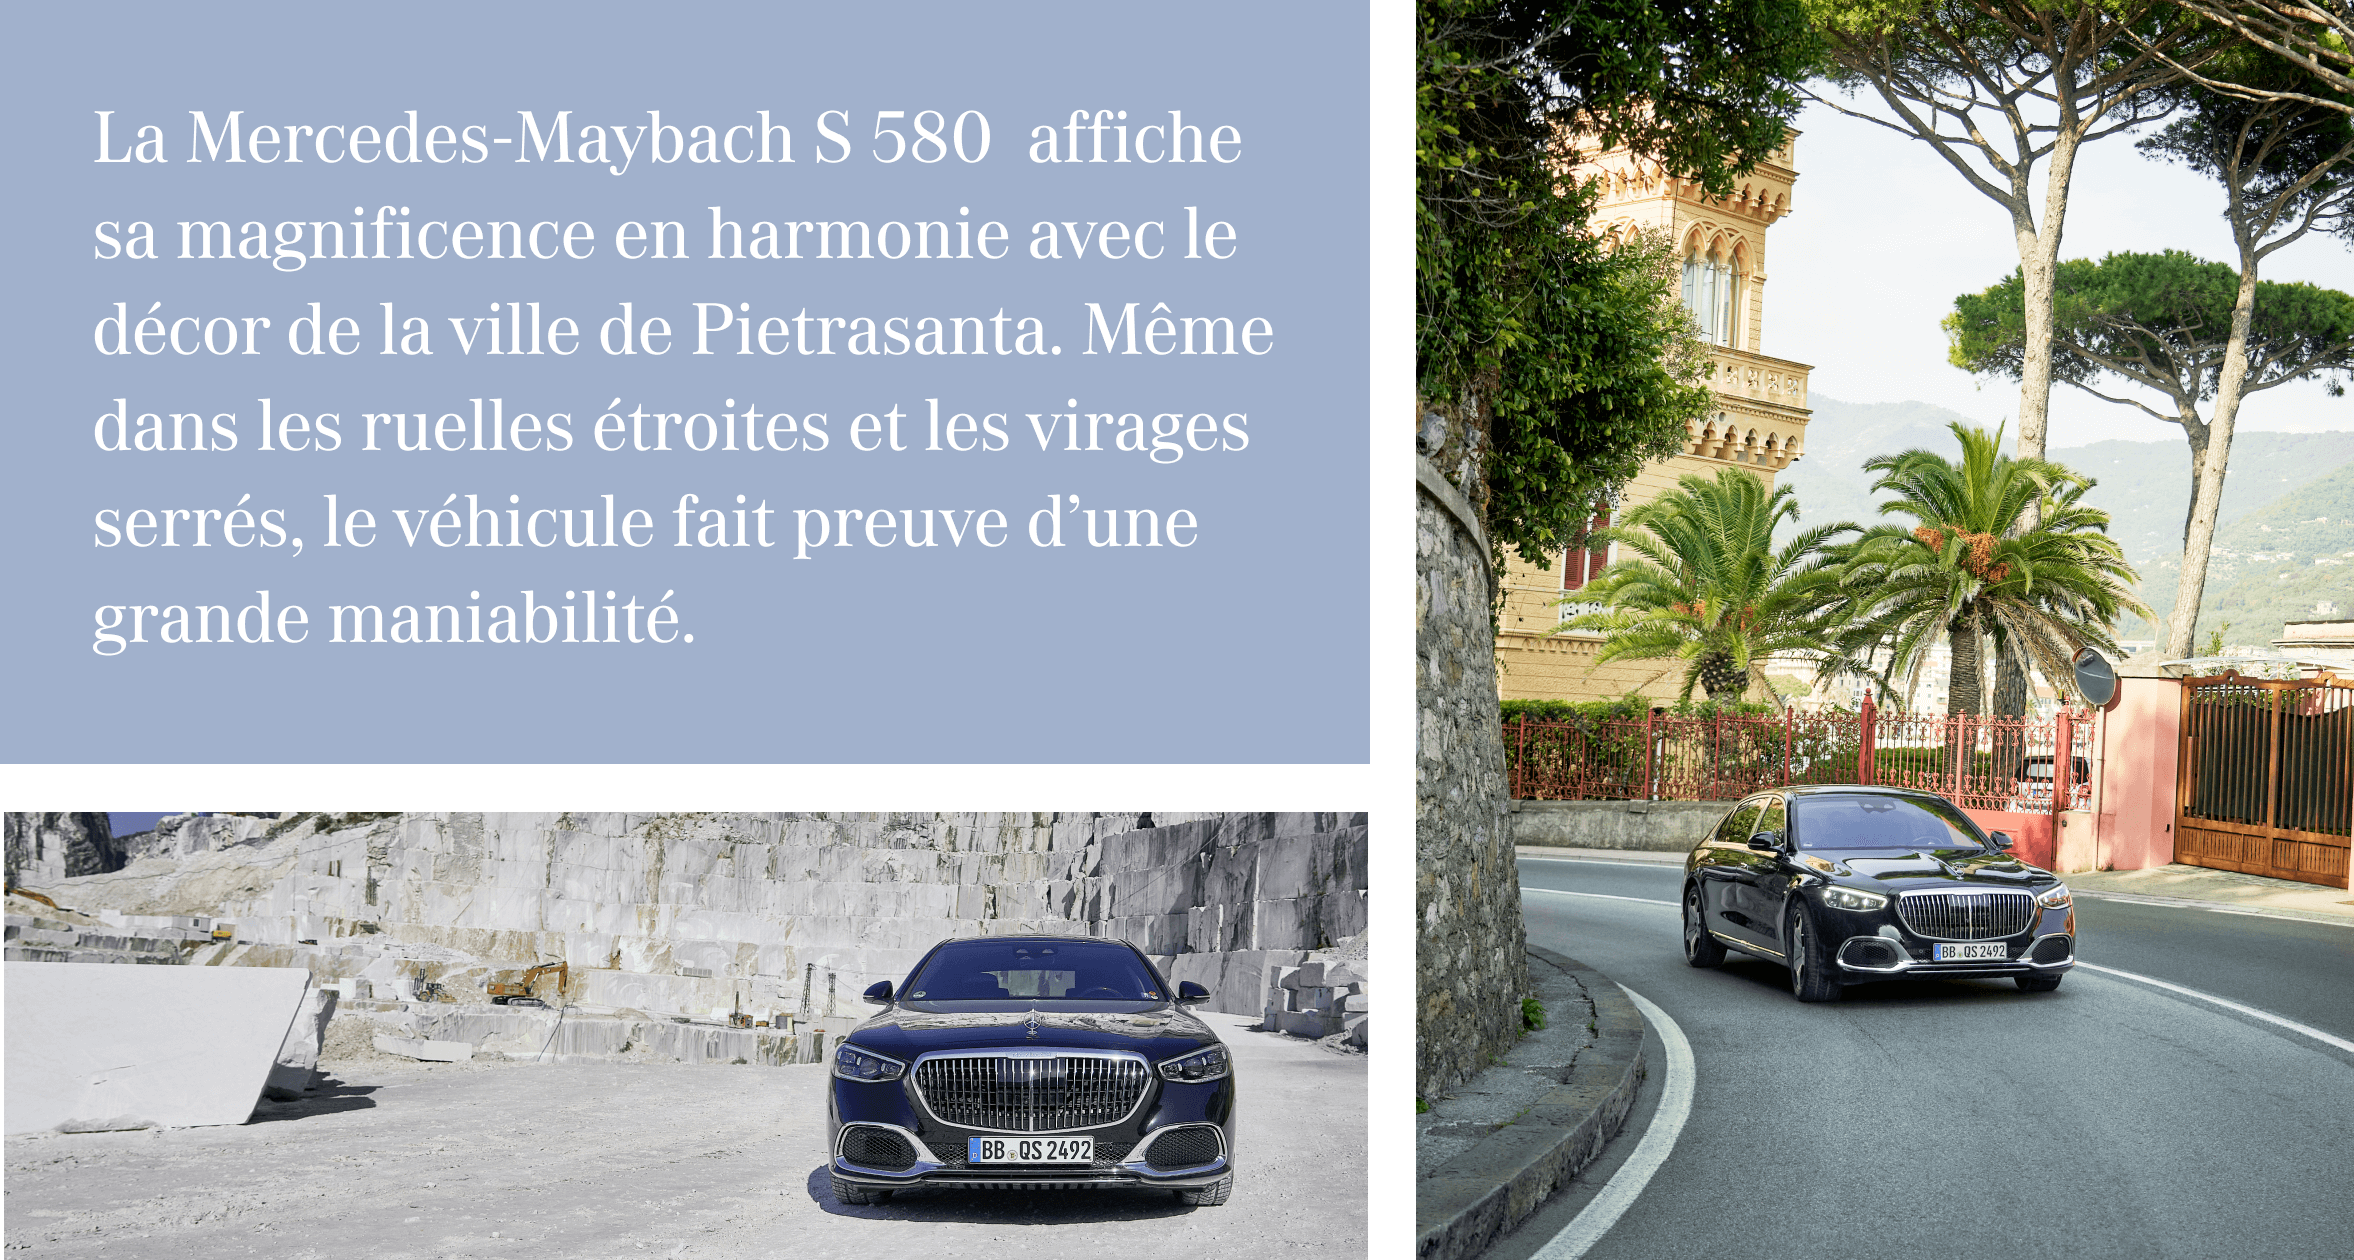 La Mercedes-Maybach S 580  affiche sa magnificence en harmonie avec le décor de la ville de Pietrasanta. Même dans les ruelles étroites et les virages serrés, le véhicule fait preuve d’une grande maniabilité.